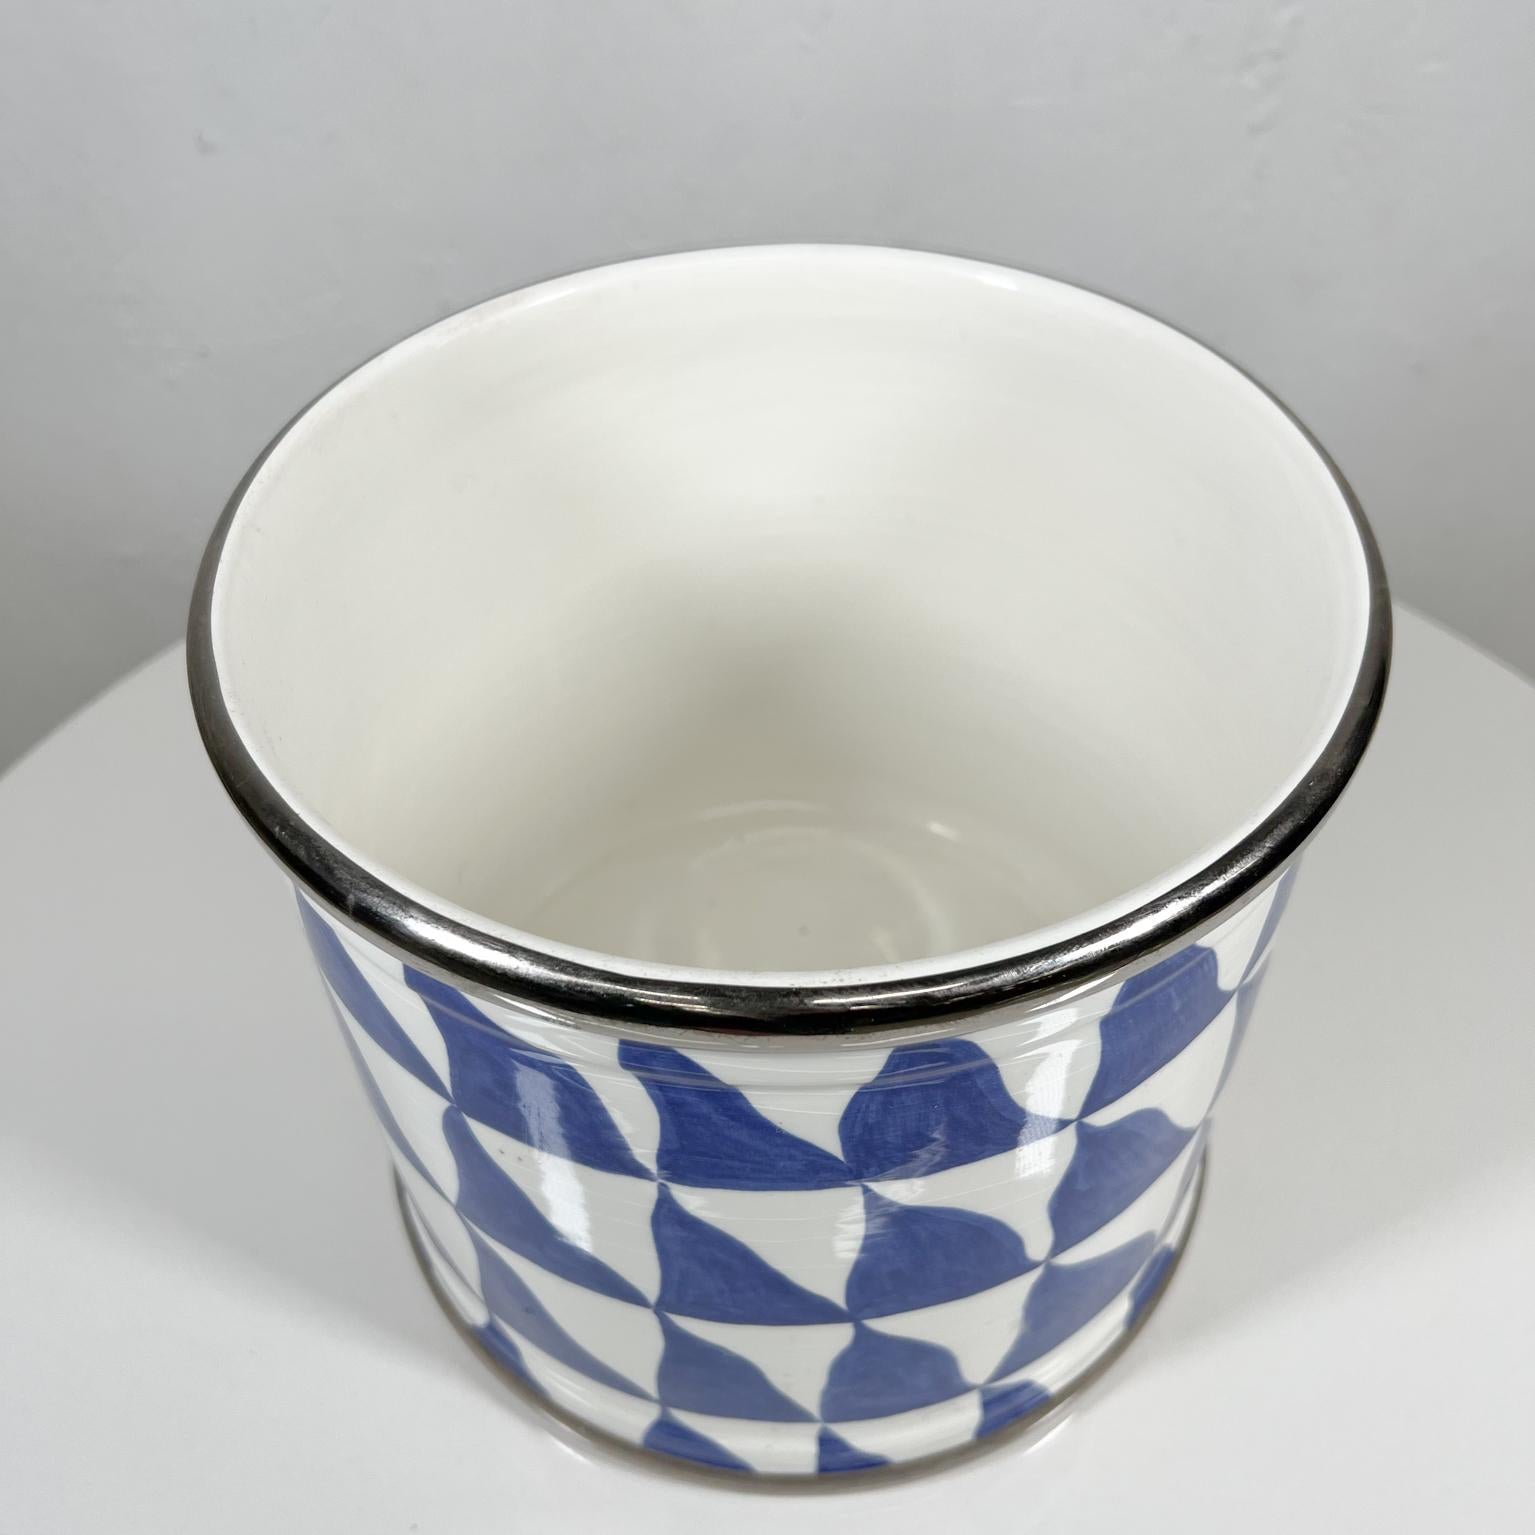 1970s Geometric Planter Pot by Tiffany & Co Este Ceramiche, Italy 1